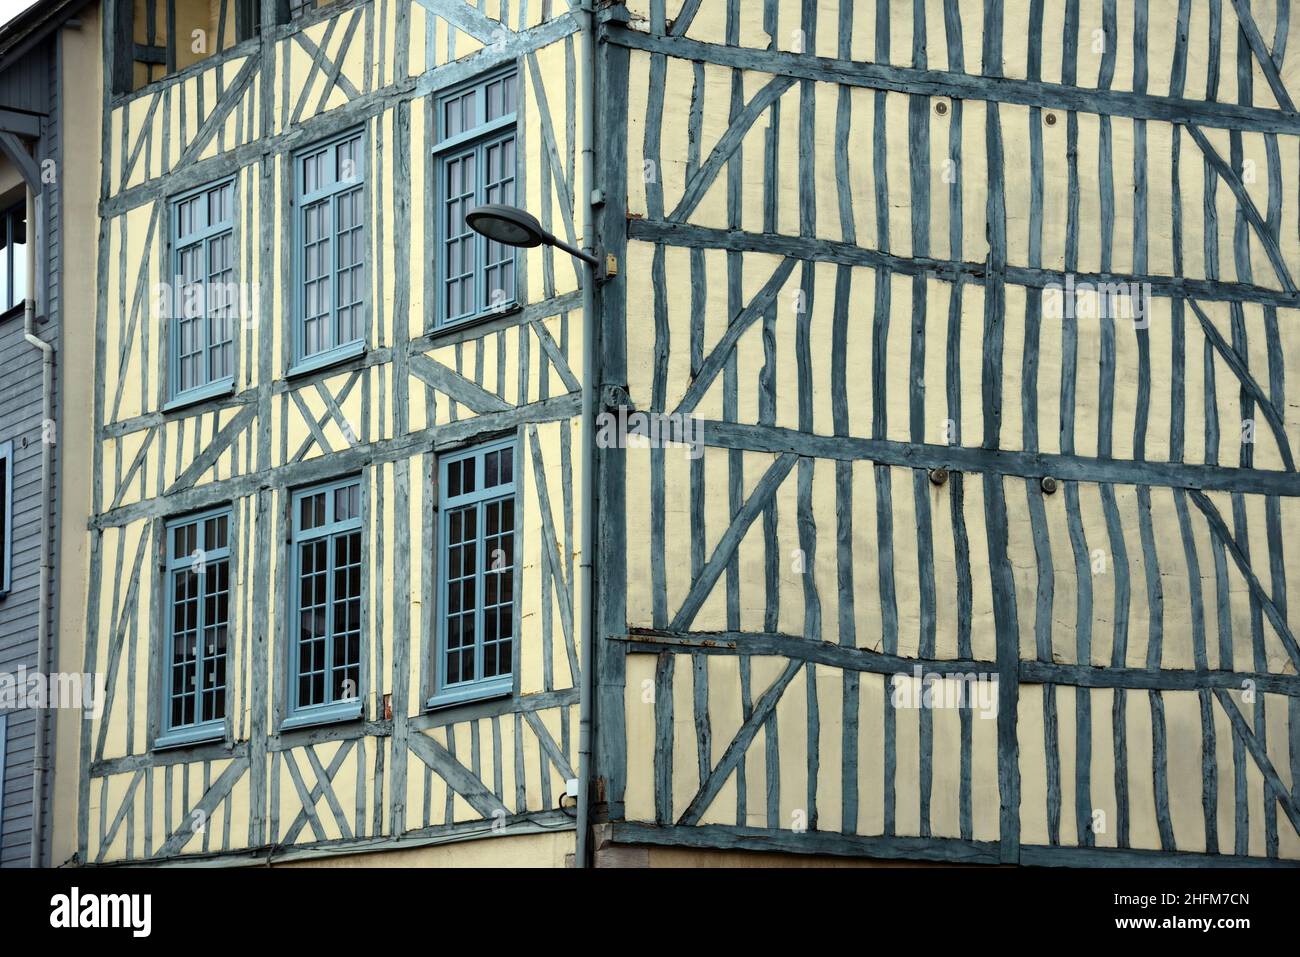 Motif de fenêtre de l'ancienne Maison en bois ou façade de la maison de ville du C17th Bâtiment historique dans la vieille ville de Rouen Normandie France Banque D'Images